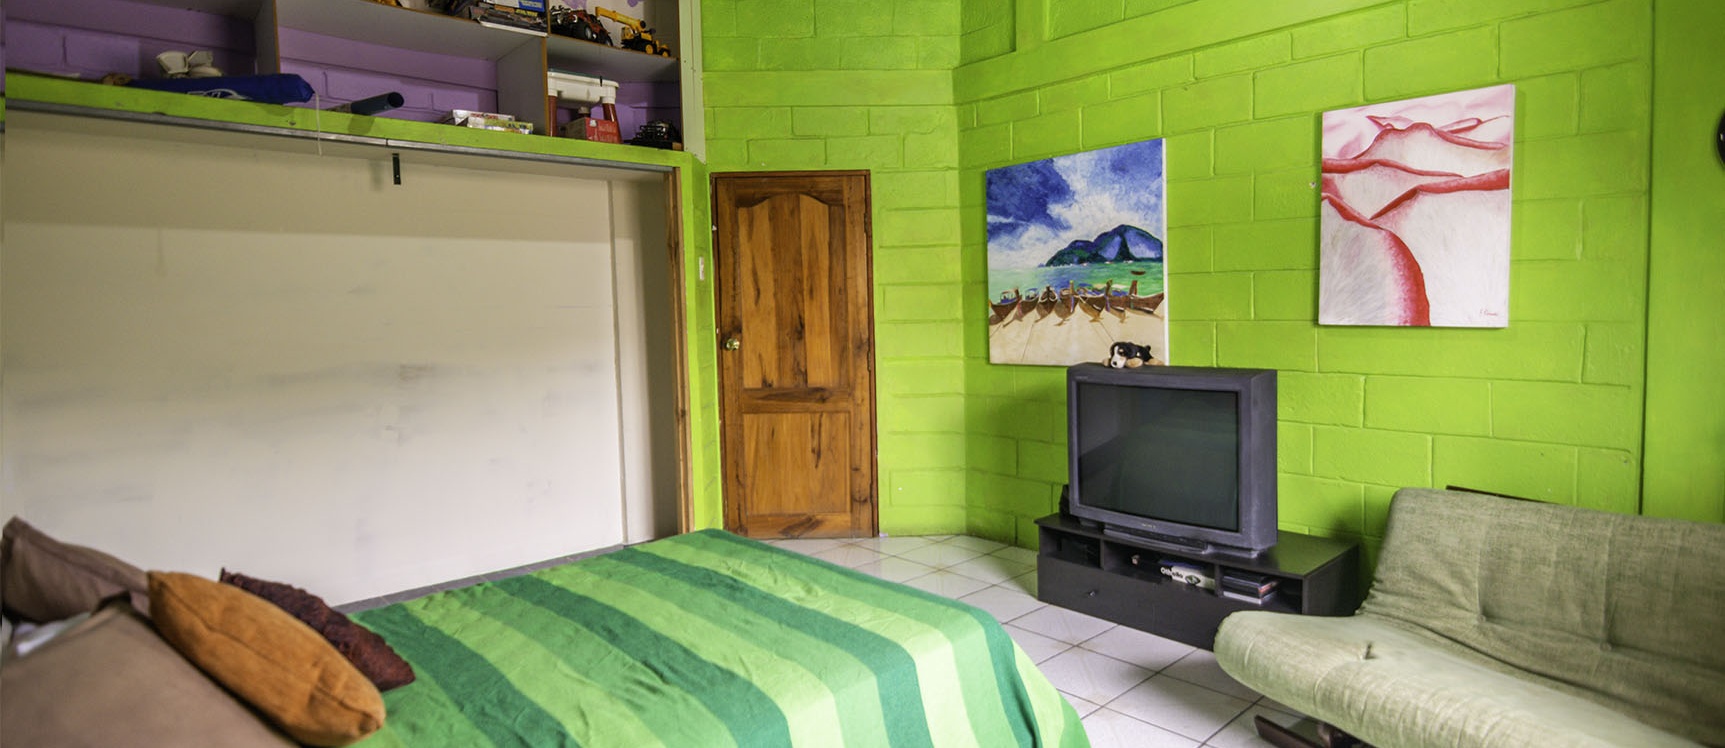 GeoBienes - Casa en venta en urbanización Puerto Azul, Vía a la Costa - Plusvalia Guayaquil Casas de venta y alquiler Inmobiliaria Ecuador